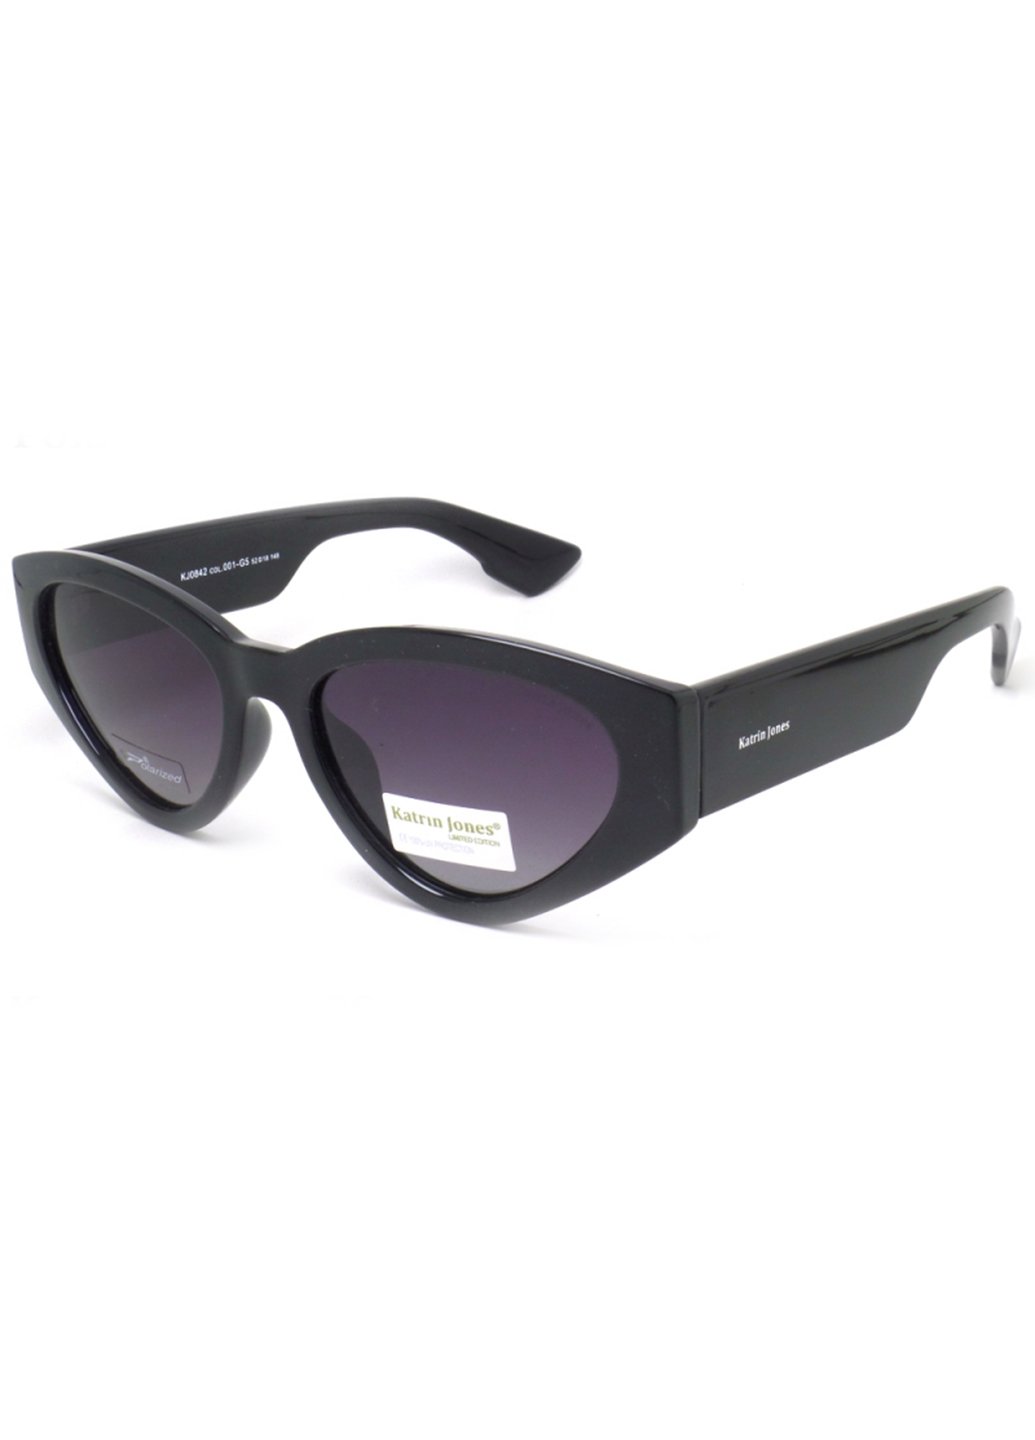 Купить Женские солнцезащитные очки Katrin Jones с поляризацией KJ0842 180020 - Черный в интернет-магазине